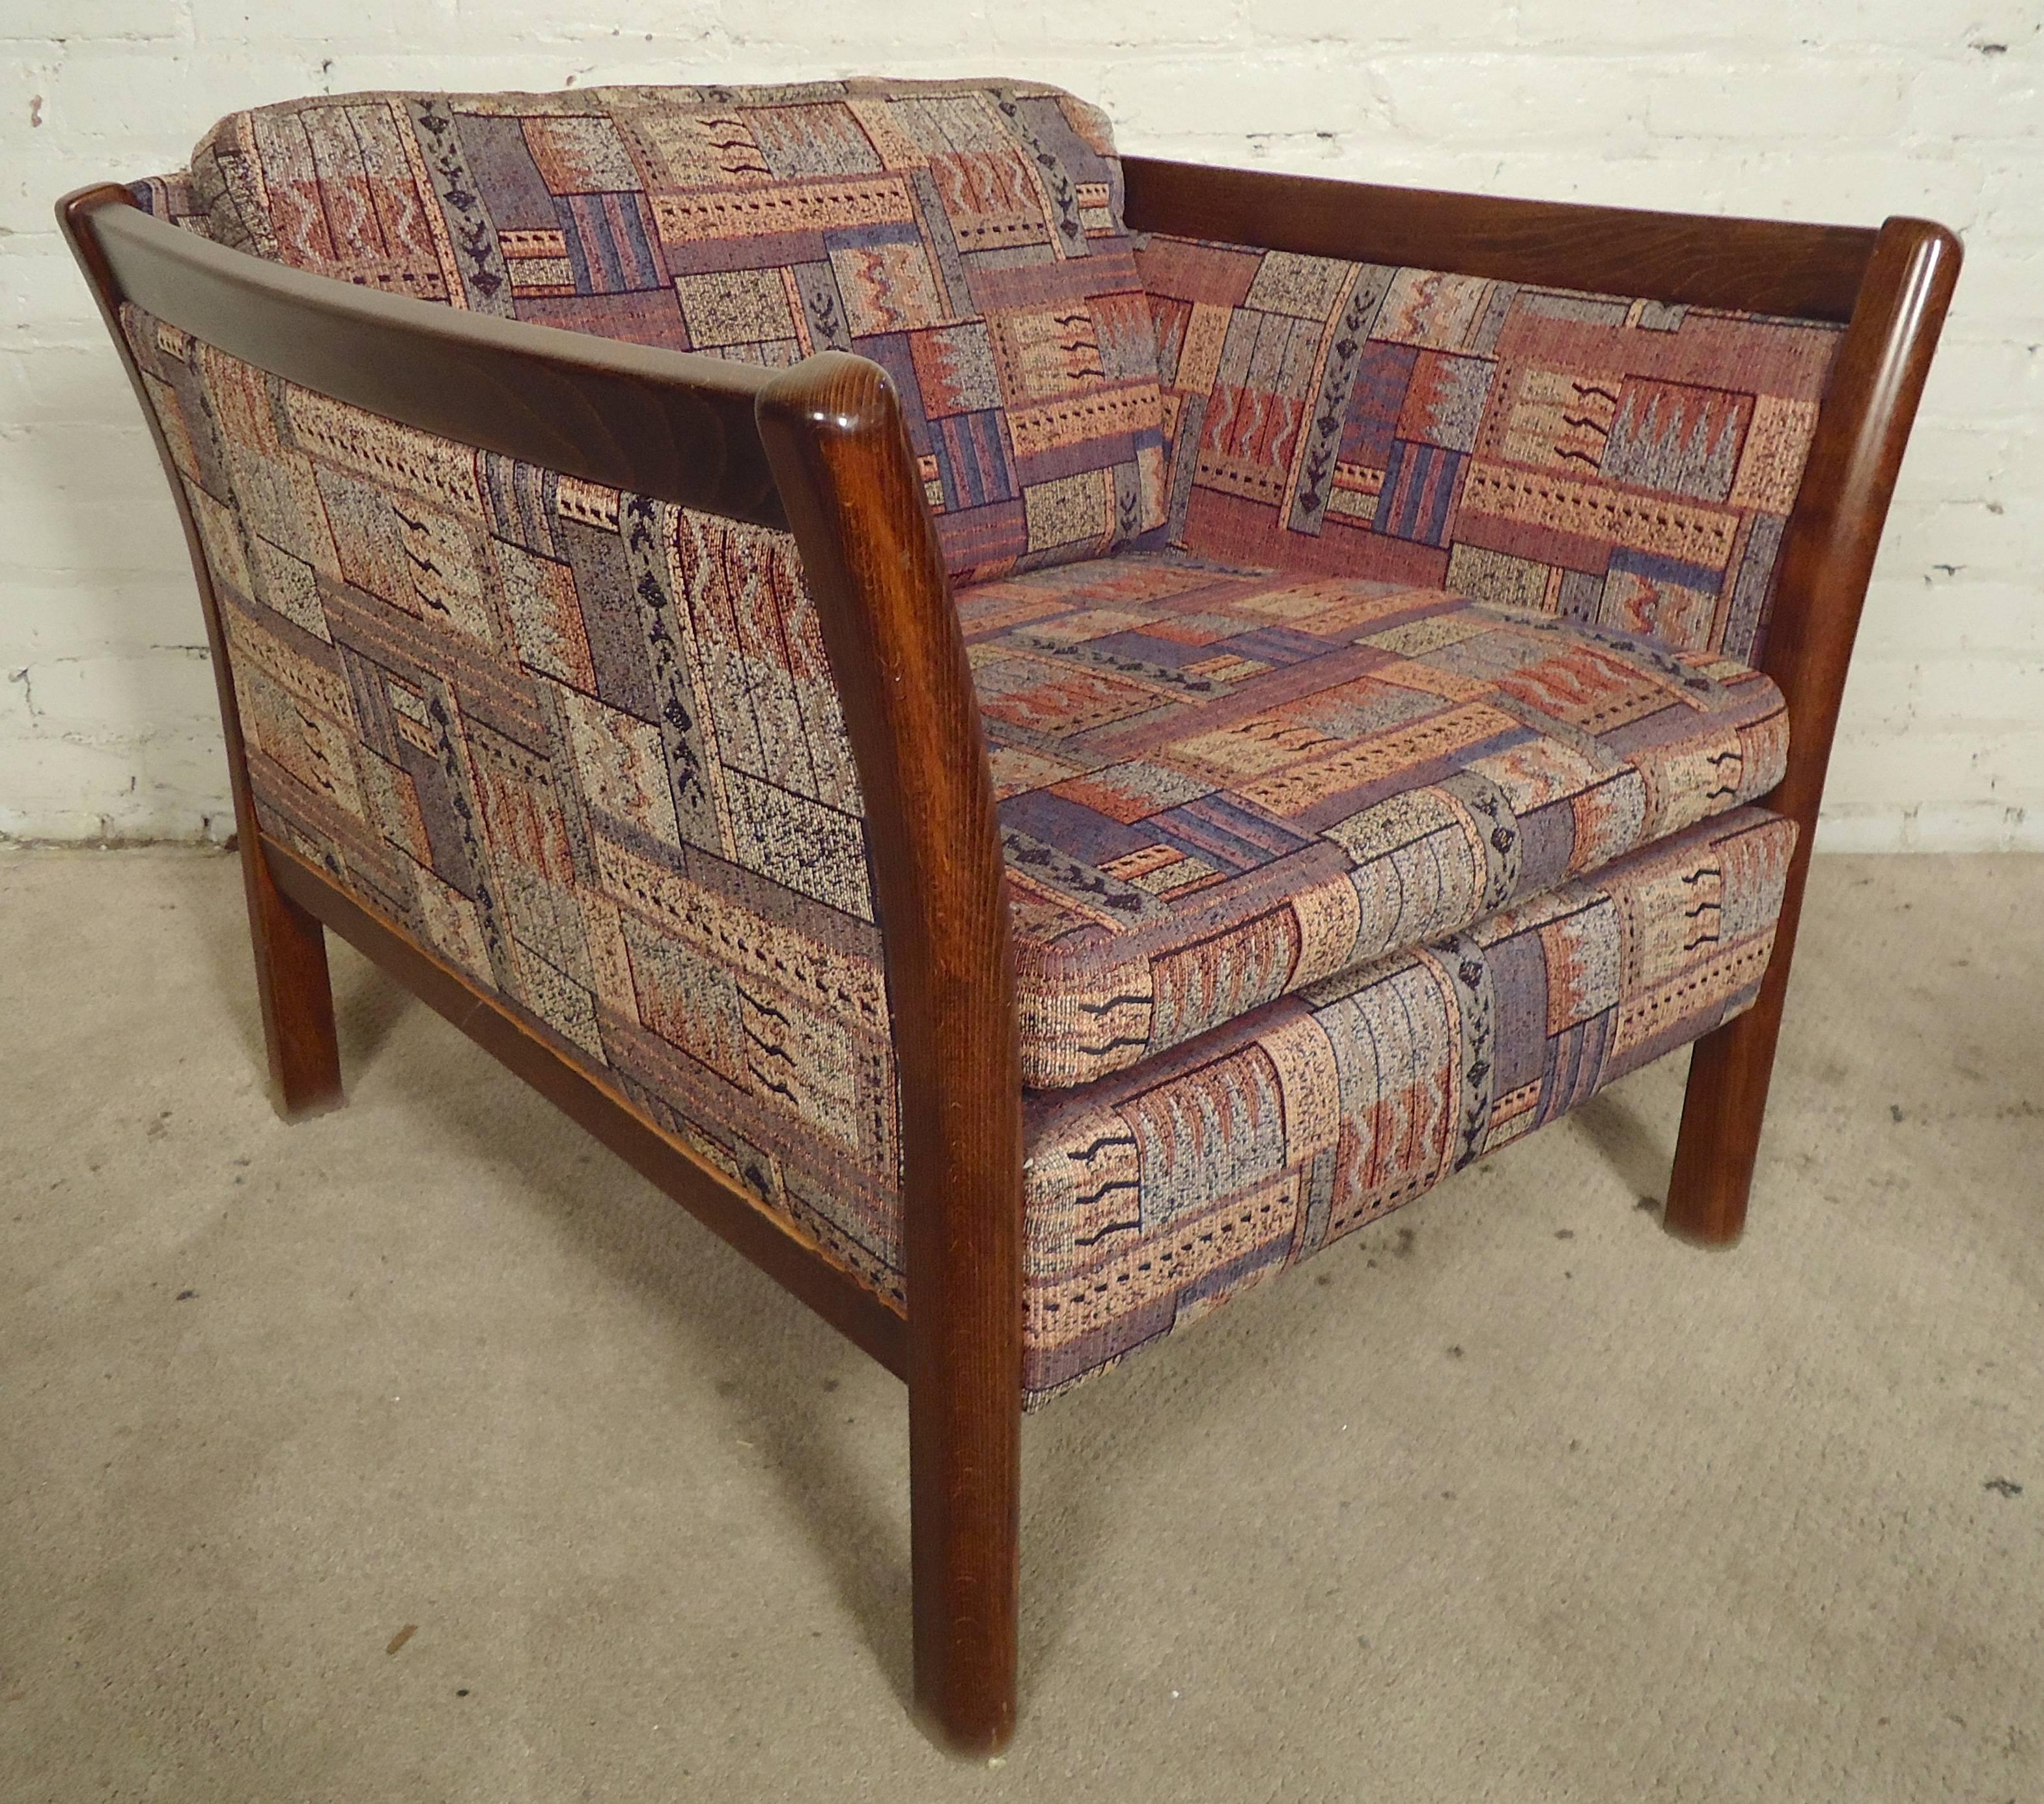 Moderne Sessel aus der Mitte des Jahrhunderts mit Holzverkleidung und gebogenen Armlehnen. Sehr bequeme Clubsessel mit Vintage-Polsterung.

(Bitte bestätigen Sie den Standort des Artikels - NY oder NJ - mit dem Händler)
